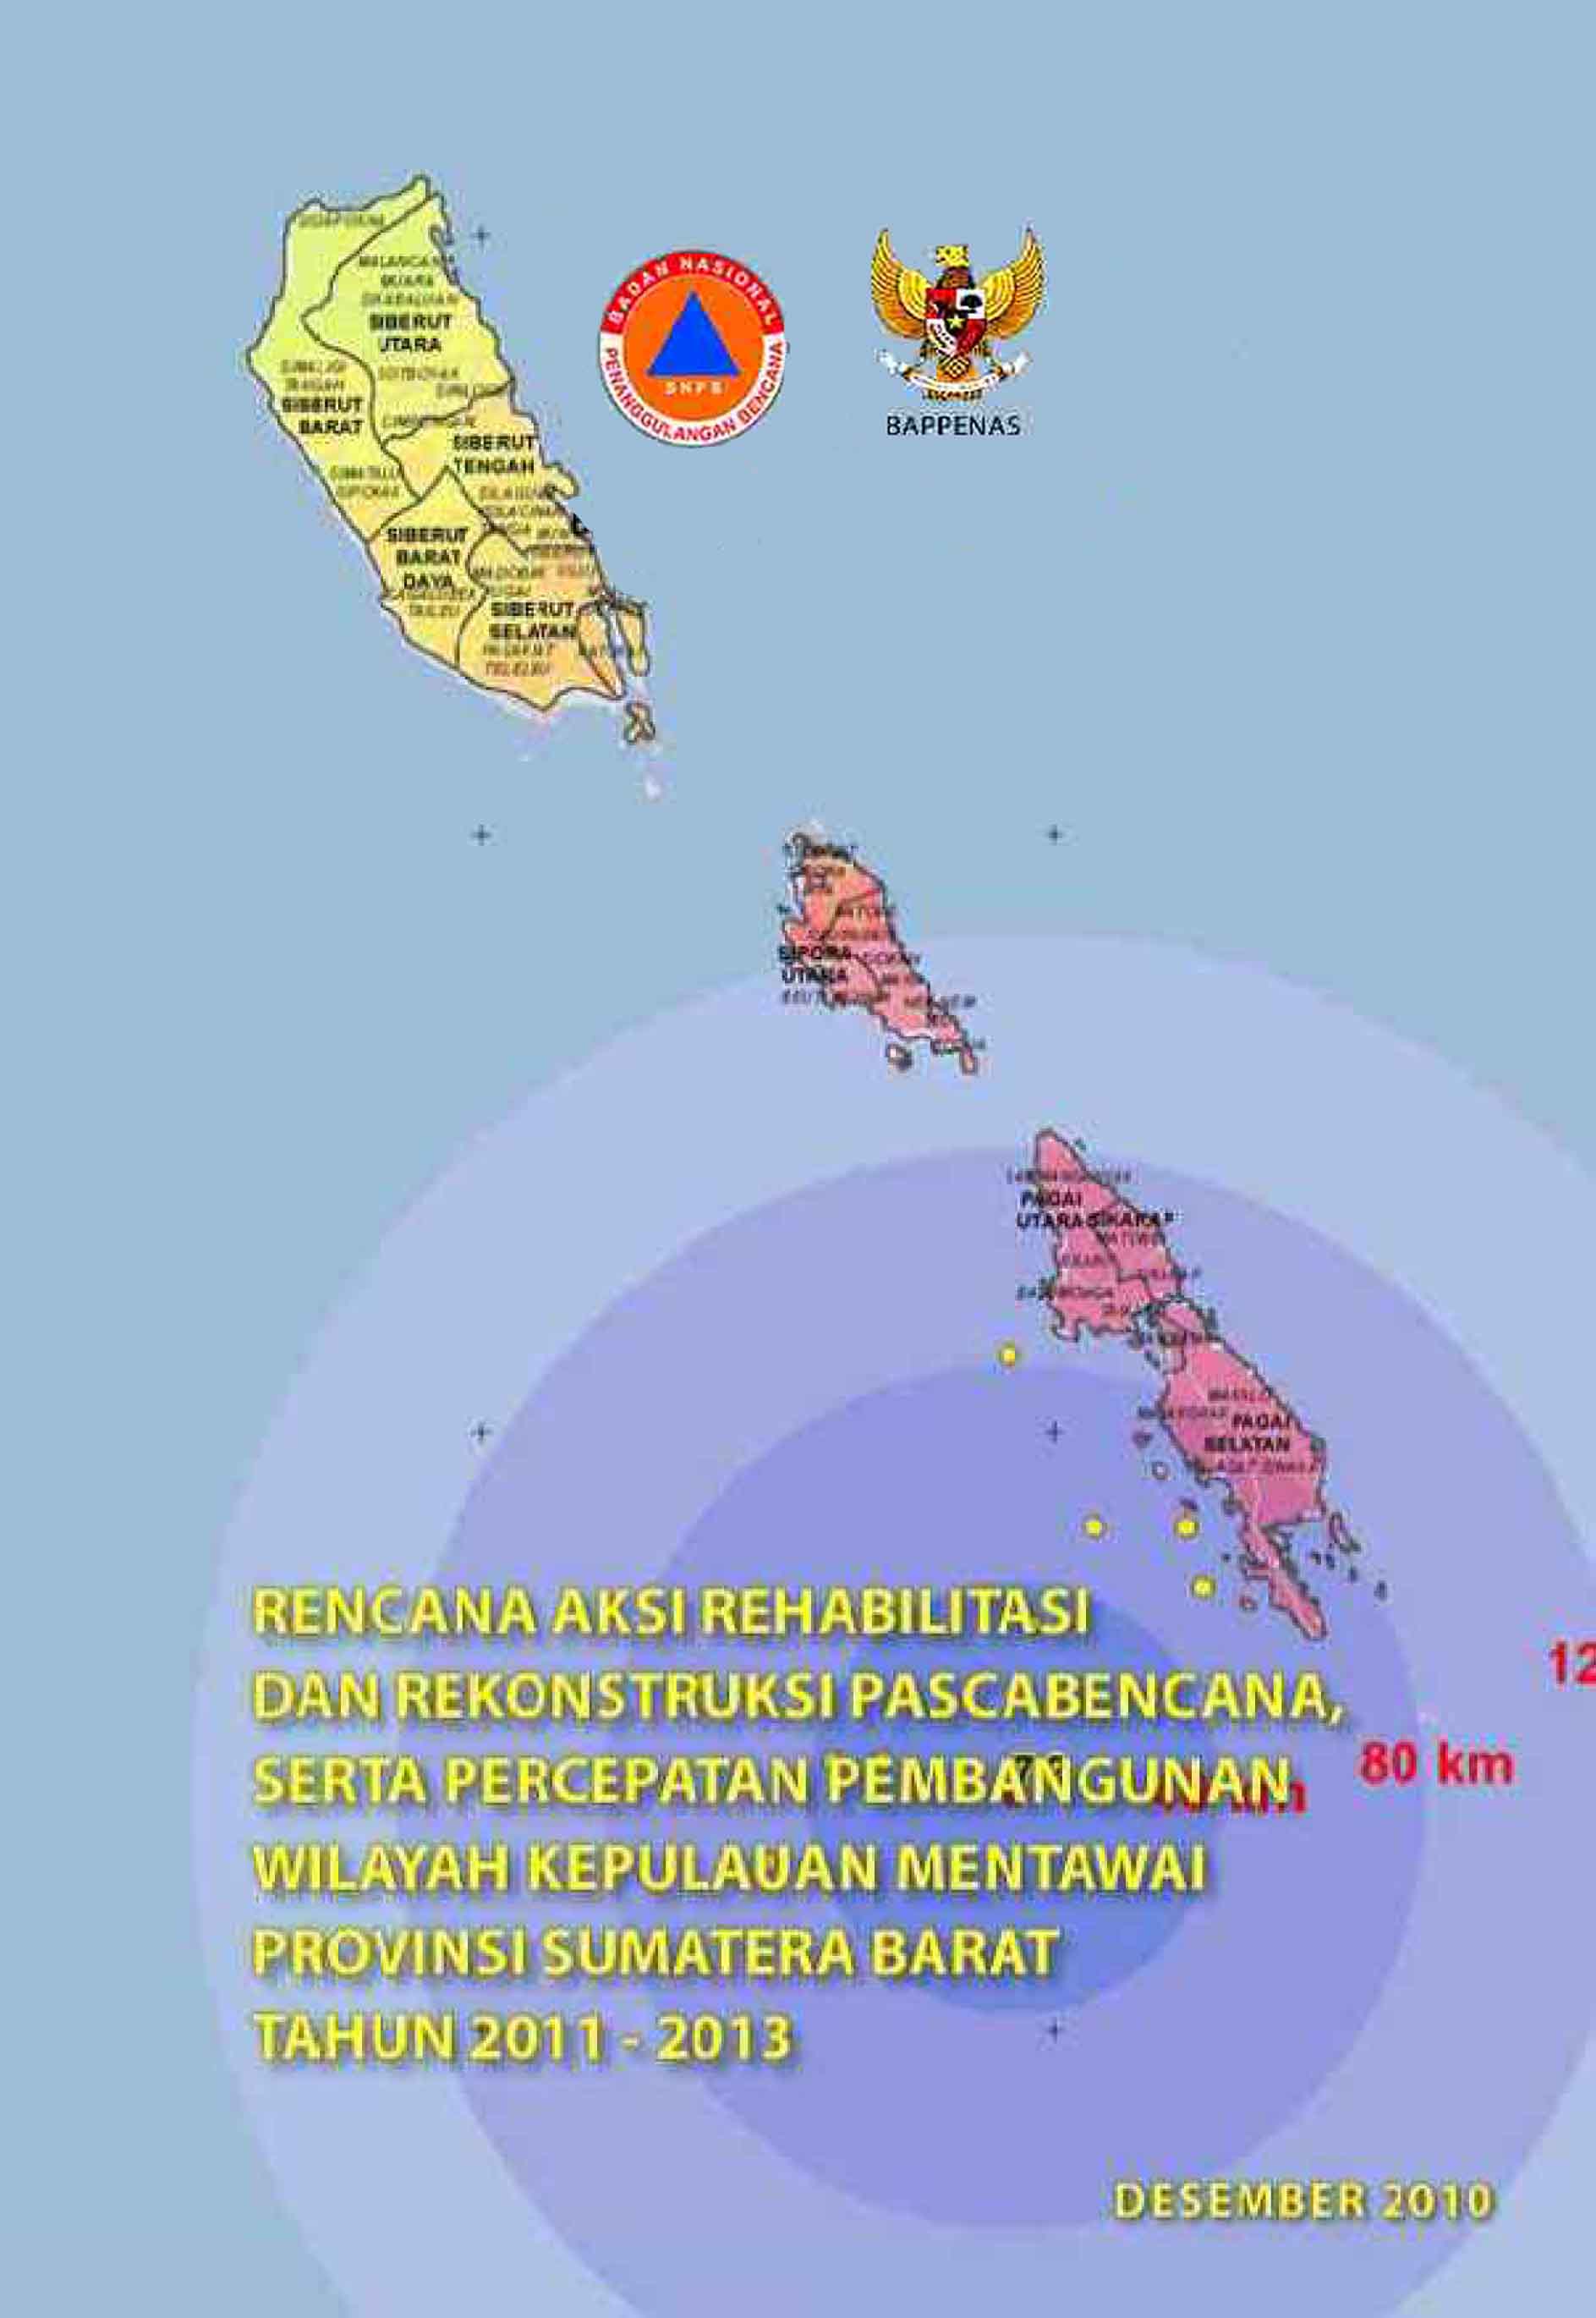 Rencana Aksi Rehabilitasi dan Rekonstruksi Pascabencana serta Percepatan Pembangunan Wilayah Kepulauan Mentawai Provinsi Sumatera Barat tahun 2011-2013